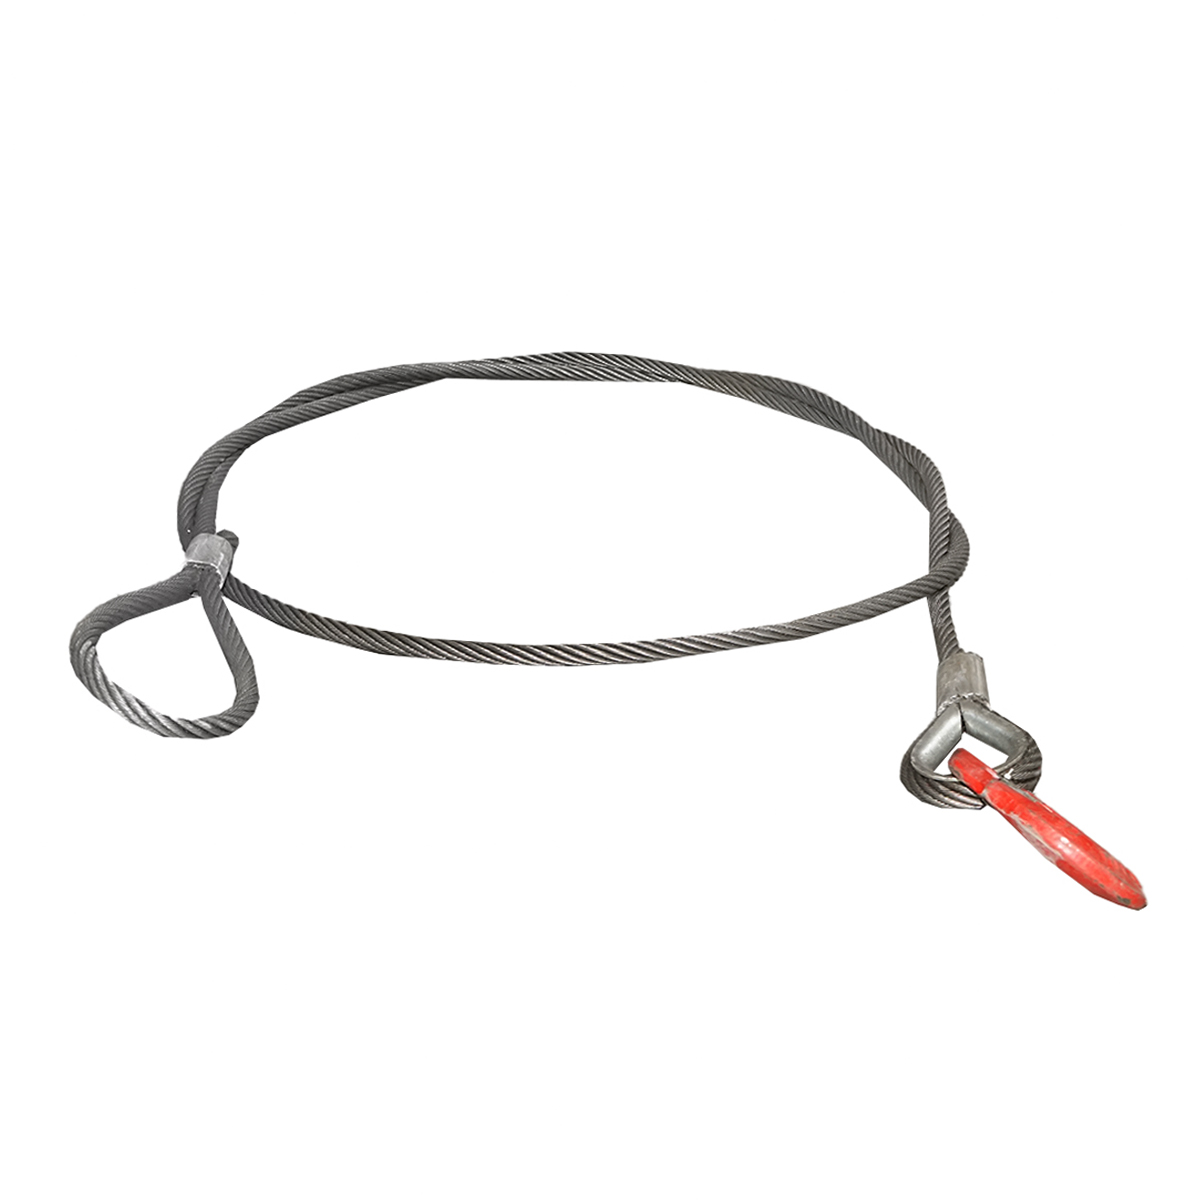 Cablu/sufa troliu din otel cu grosime de 16mm si grosime de 4m, carlig si inel pentru tractat sau ridicat